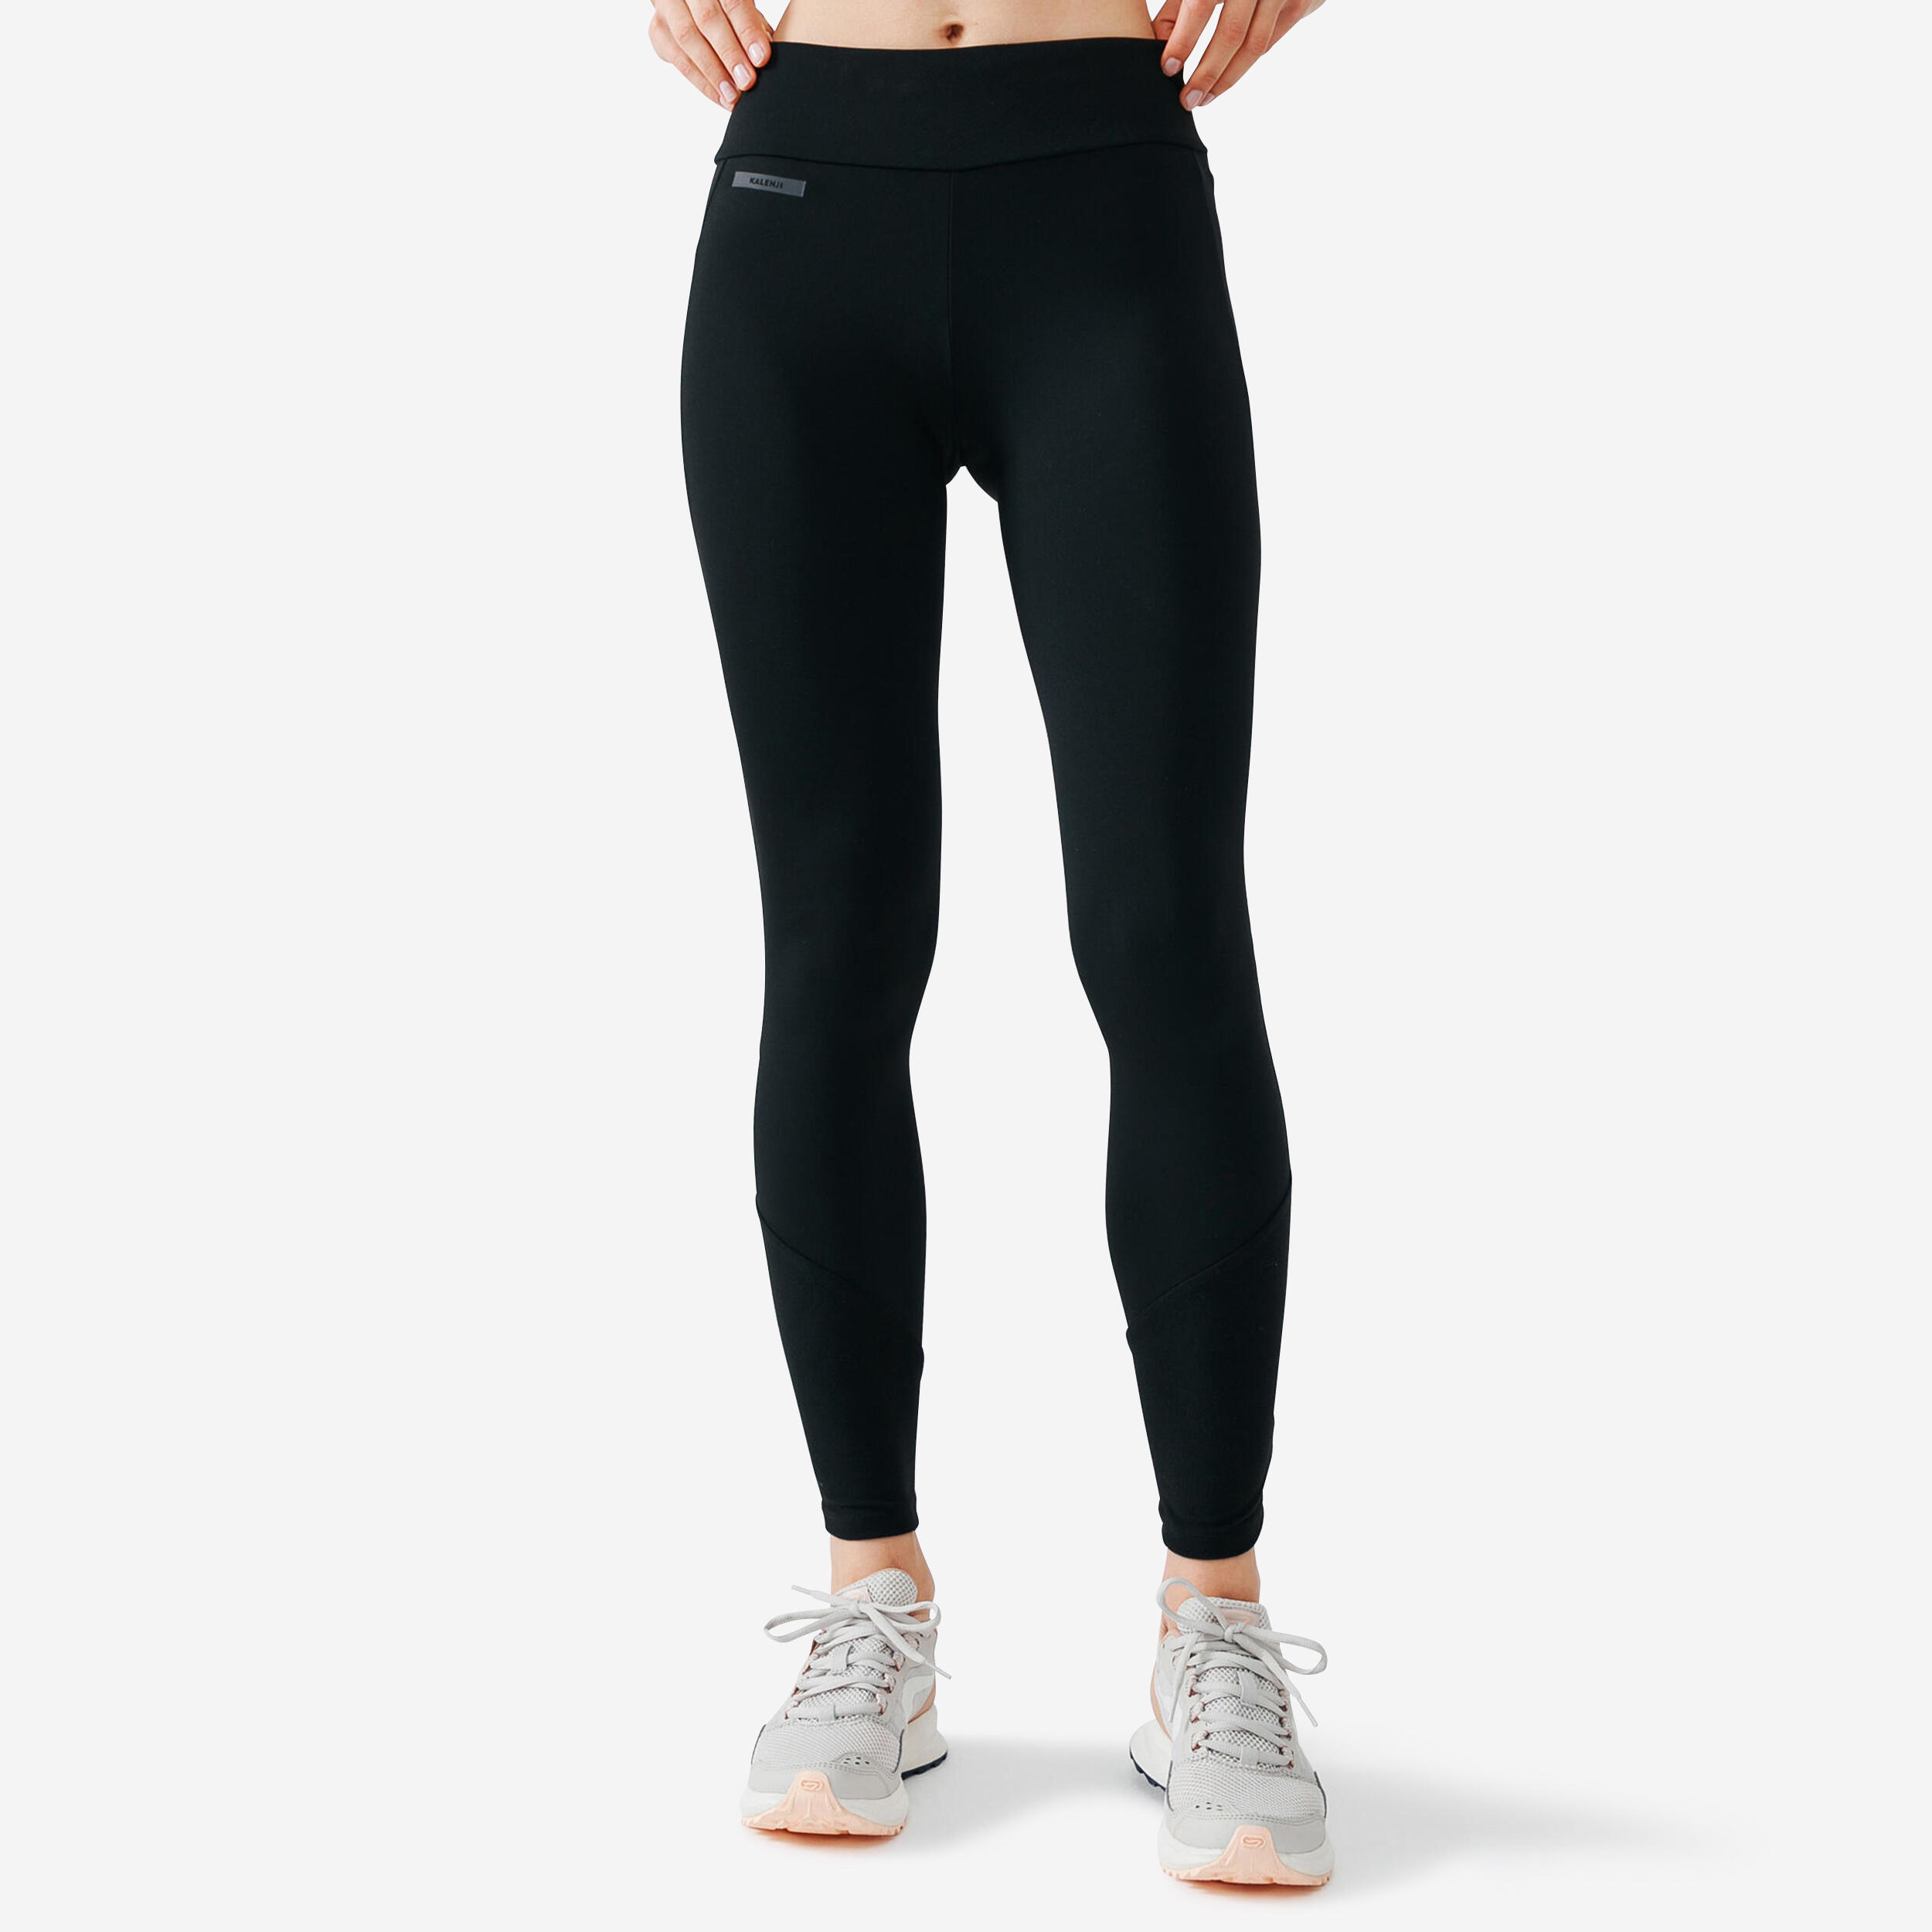 Buy Women's Running Leggings Warm - Black Online